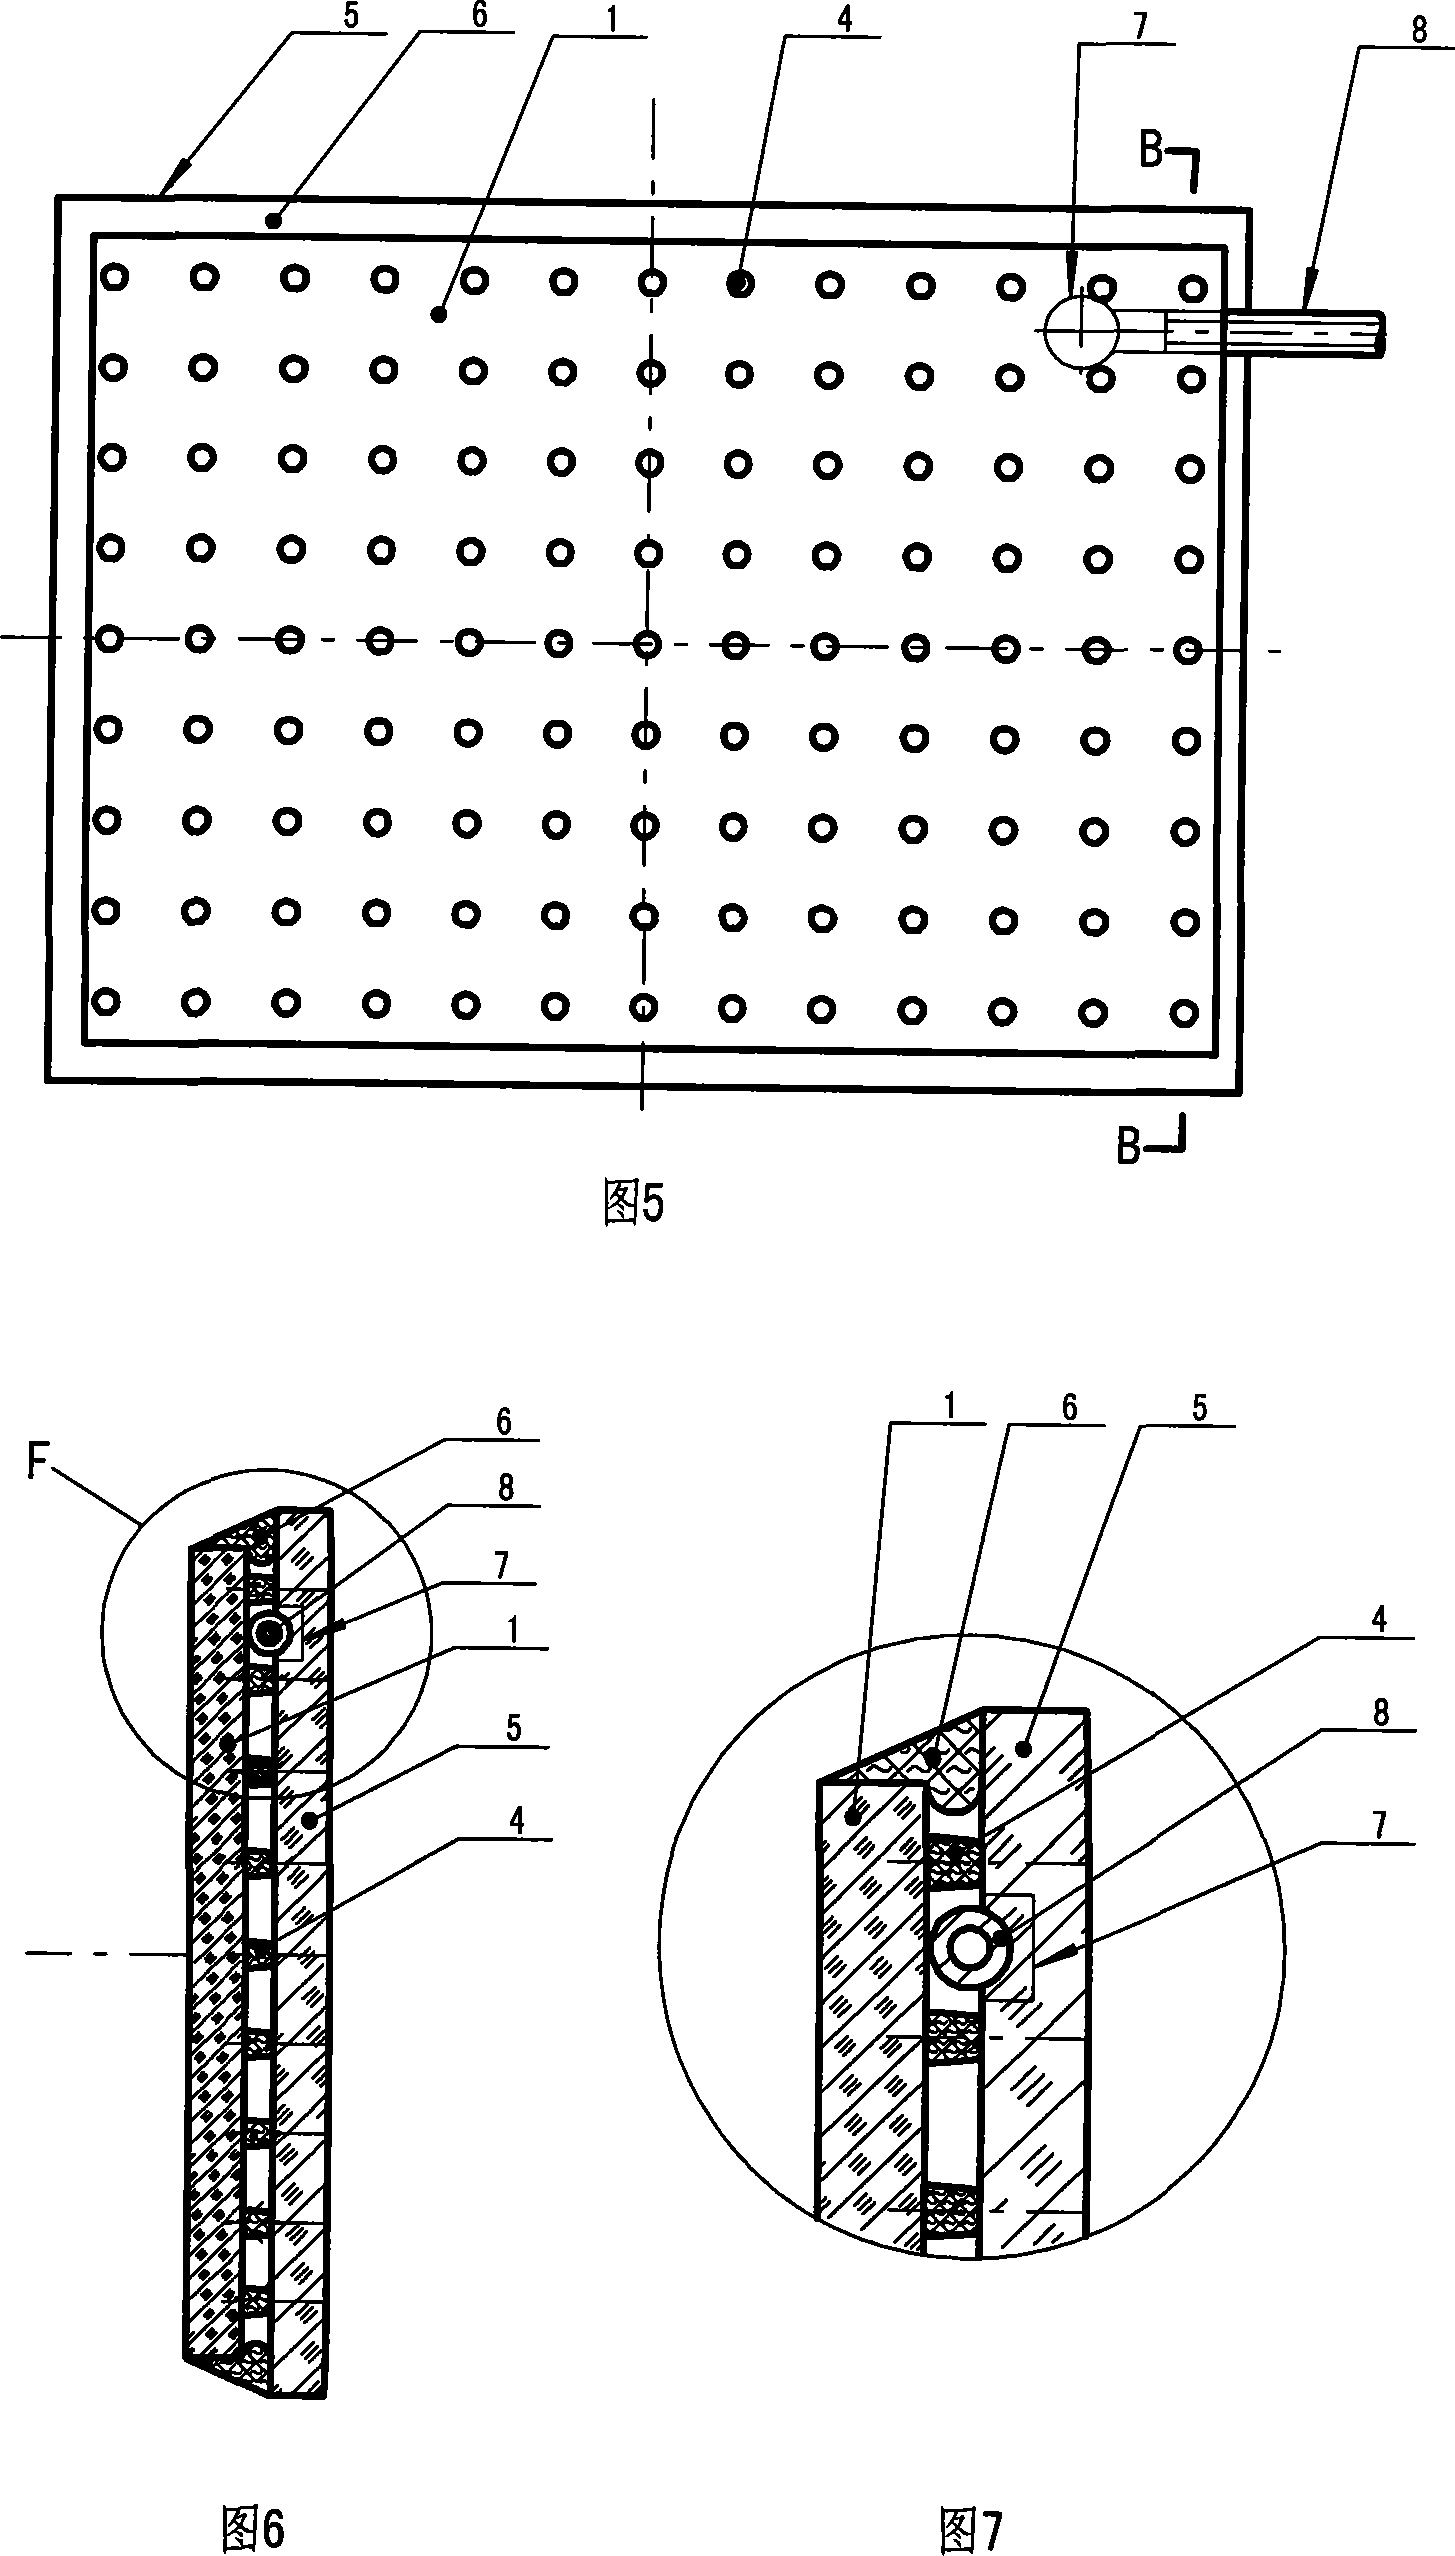 Method for preparing vacuum glass